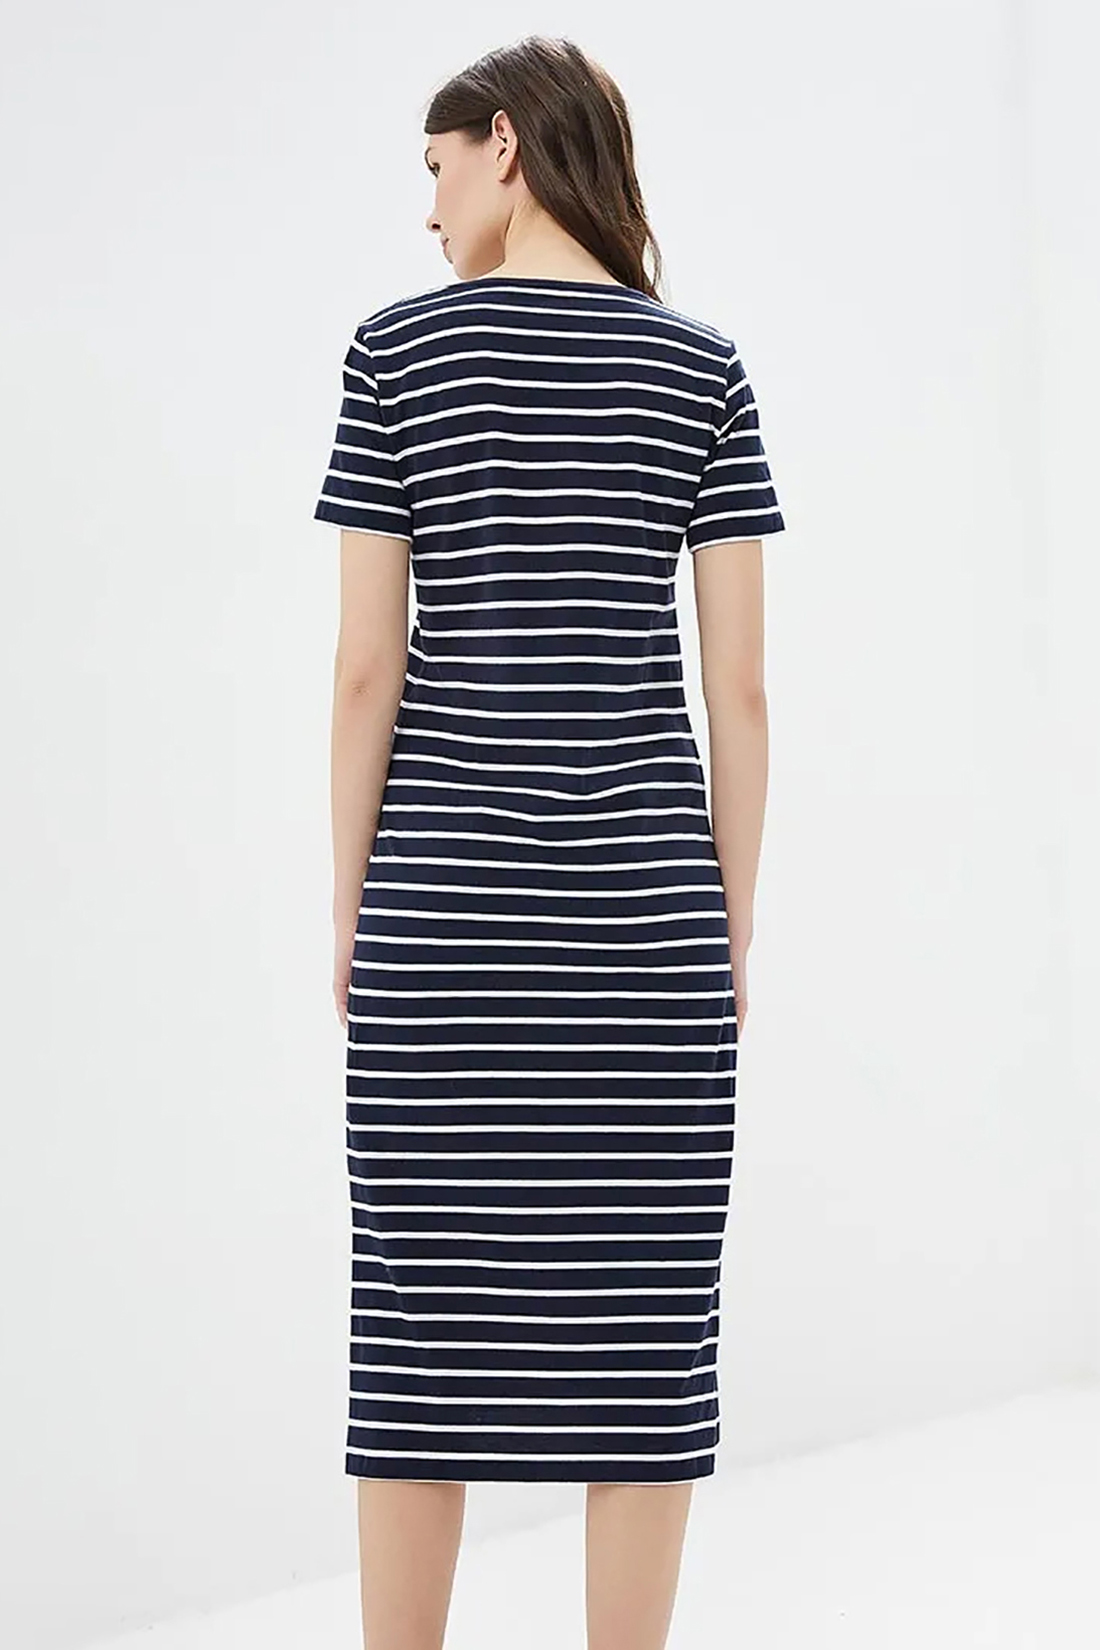 Миди-платье в полоску (арт. baon B459106), размер XS, цвет dark navy striped#синий Миди-платье в полоску (арт. baon B459106) - фото 2